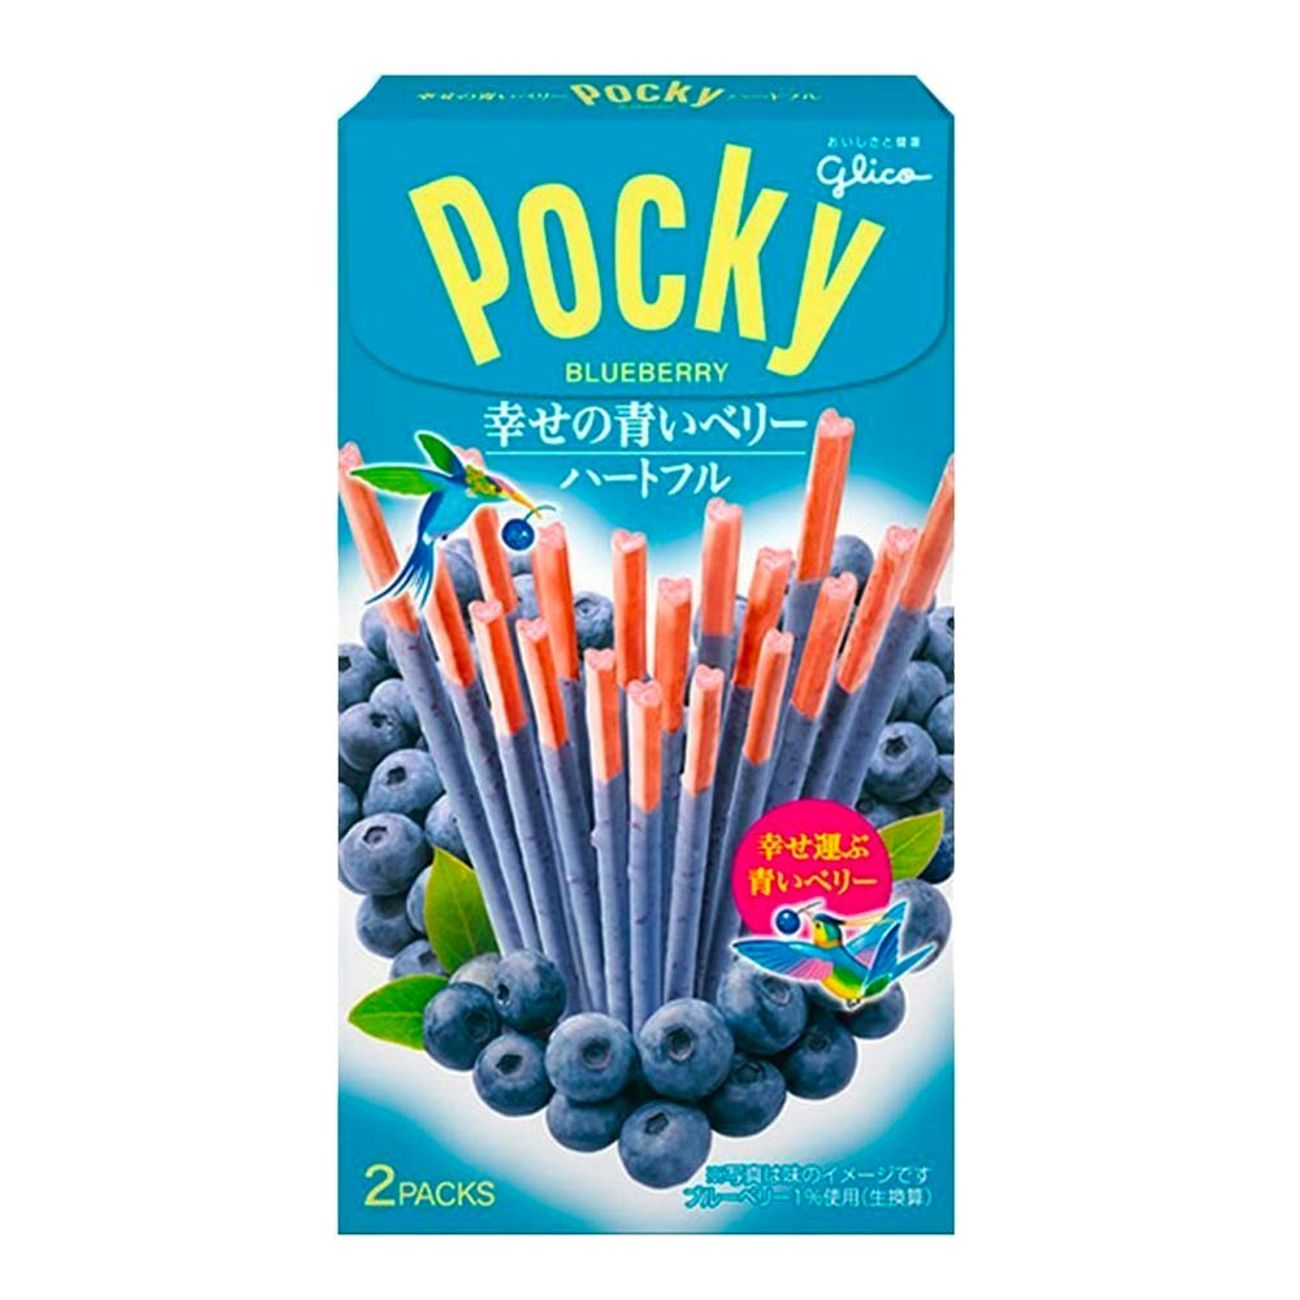 pocky-hartful-blueberry-93997-1